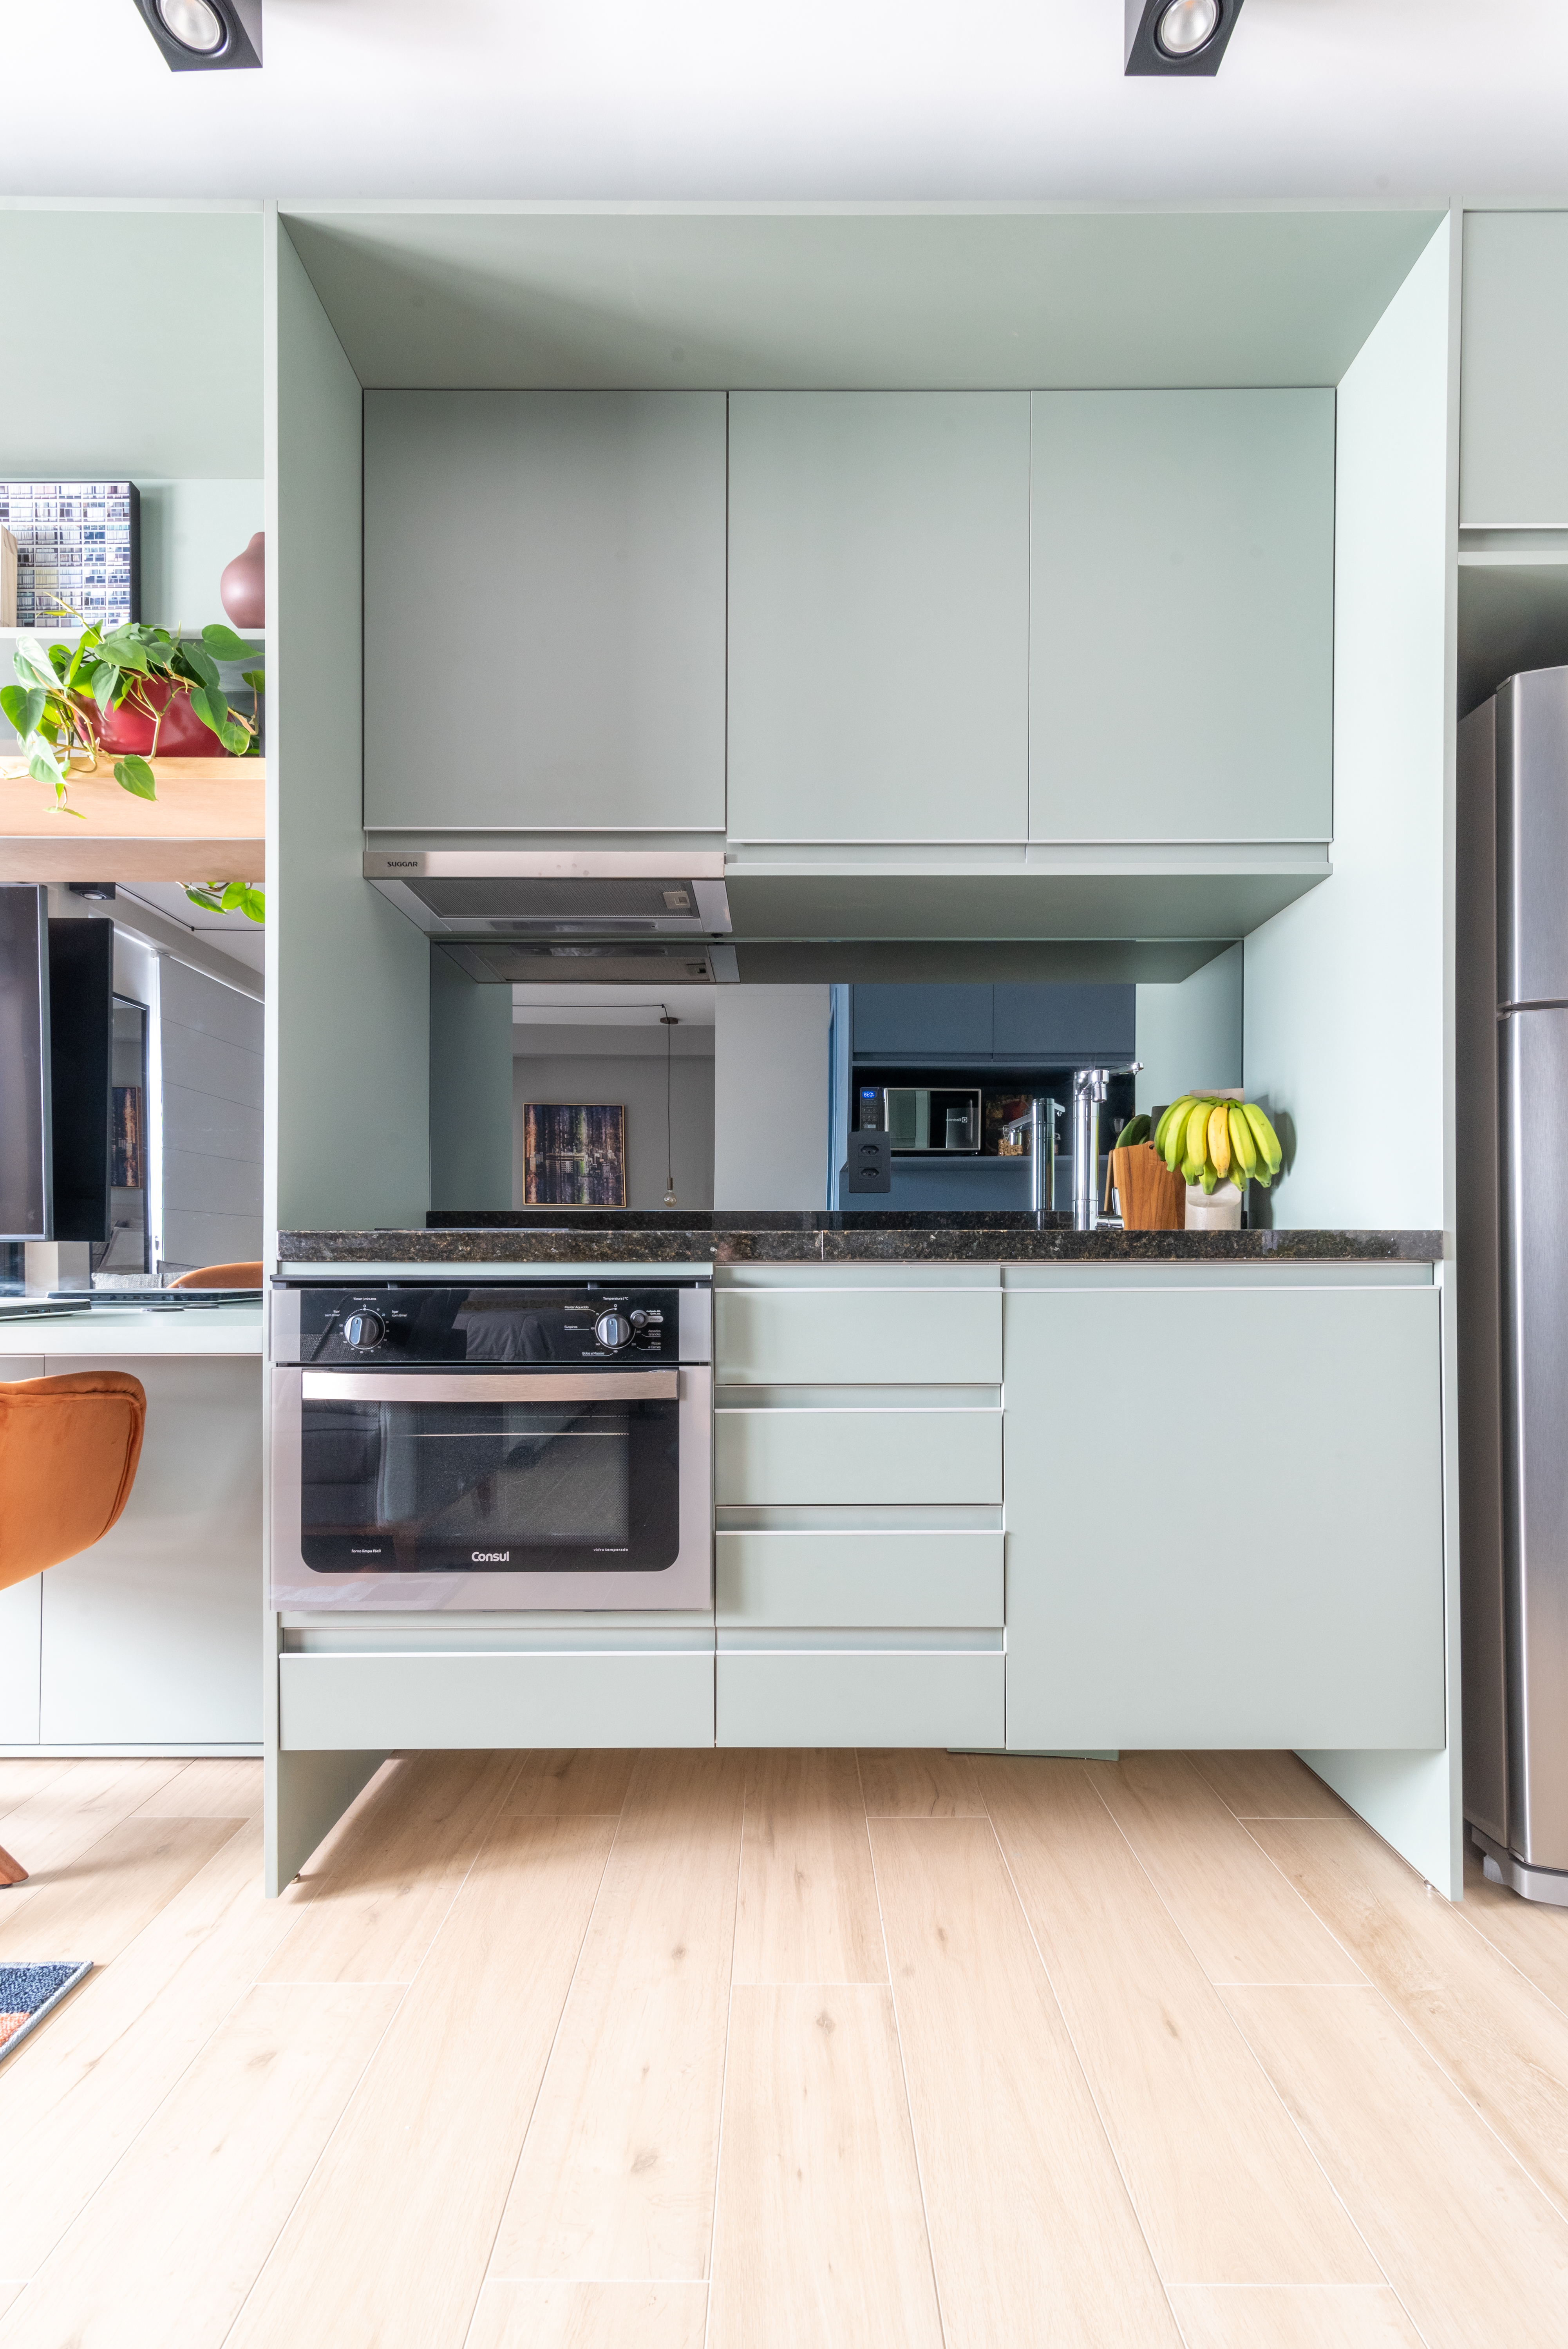 Caixa de marcenaria verde abriga cozinha, bancada e tv em estúdio de 34 m². Projeto de Abrazo Arquitetura. Na foto, cozinha pequena com marcenaria verde clara.